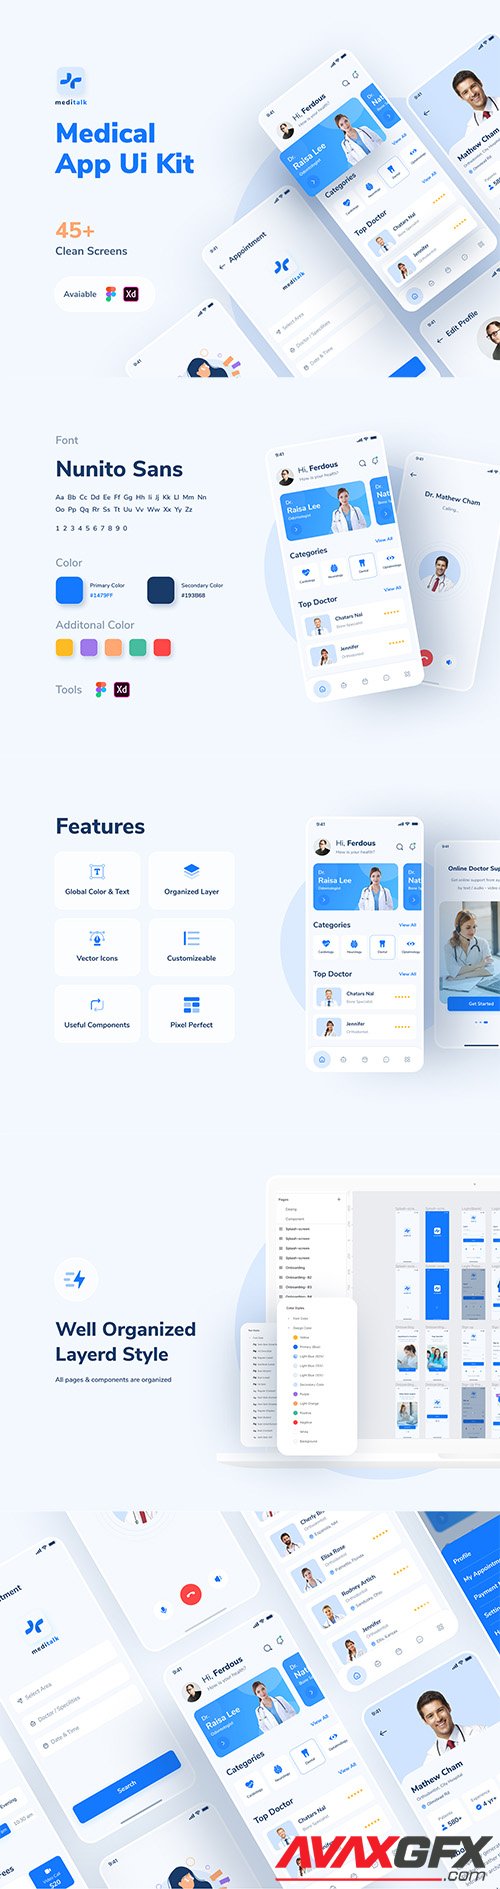 MediTalk-Medical App UI Kit